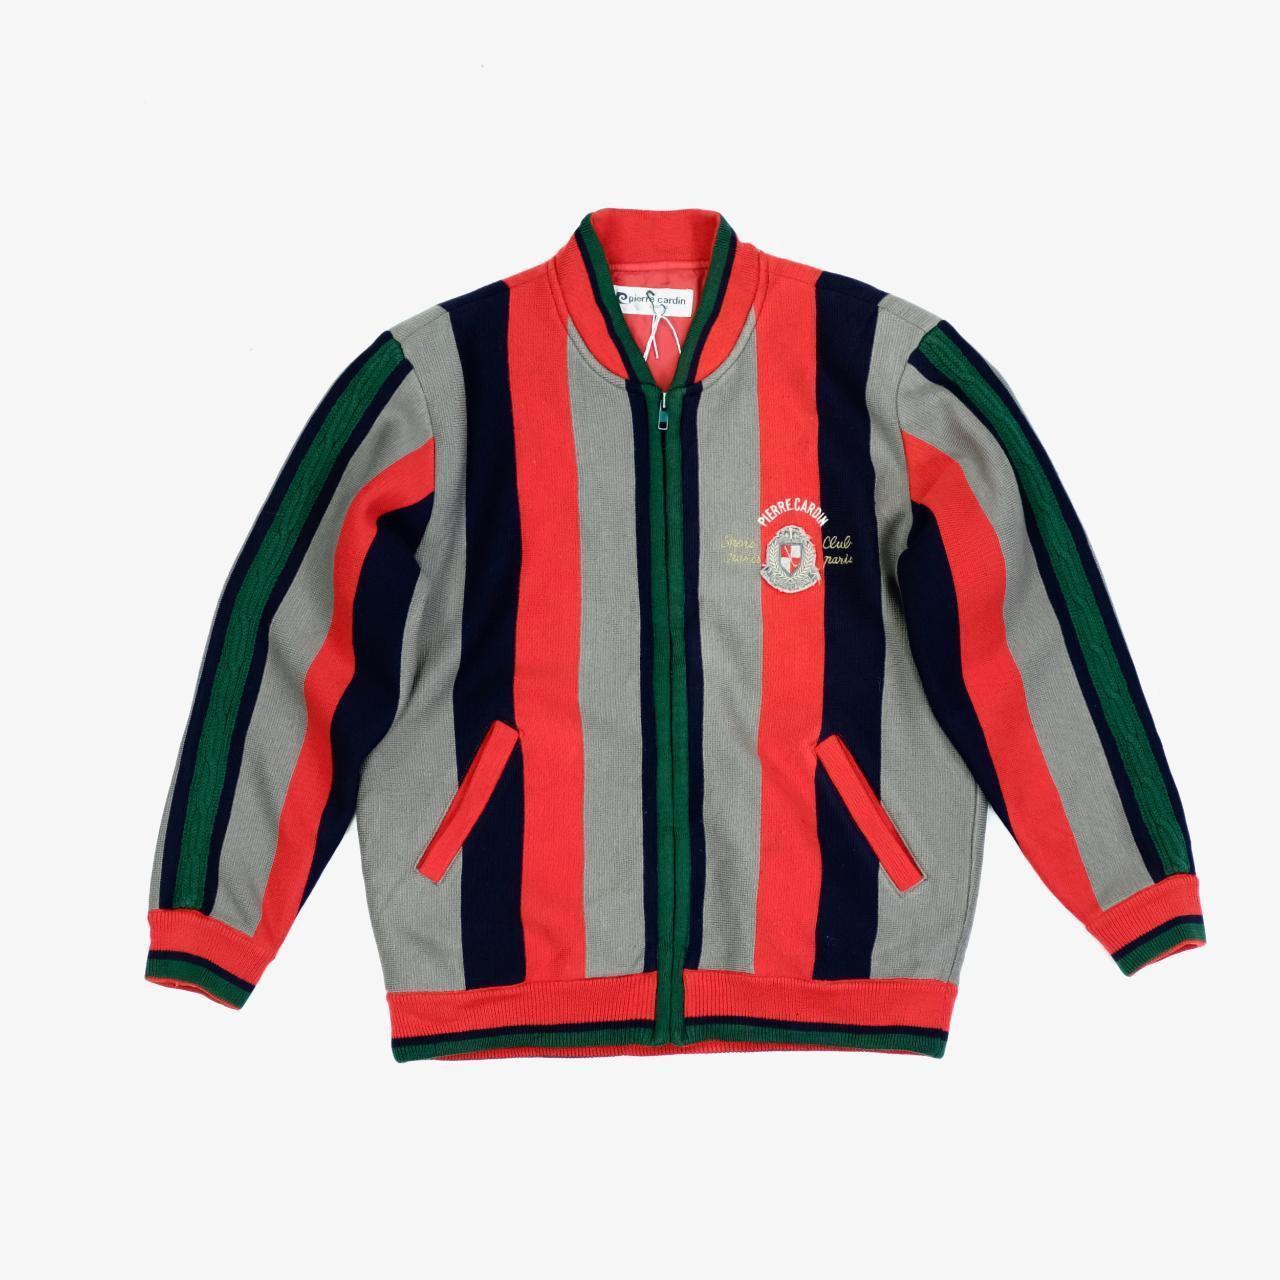 Pierre Cardin Knit Jacket